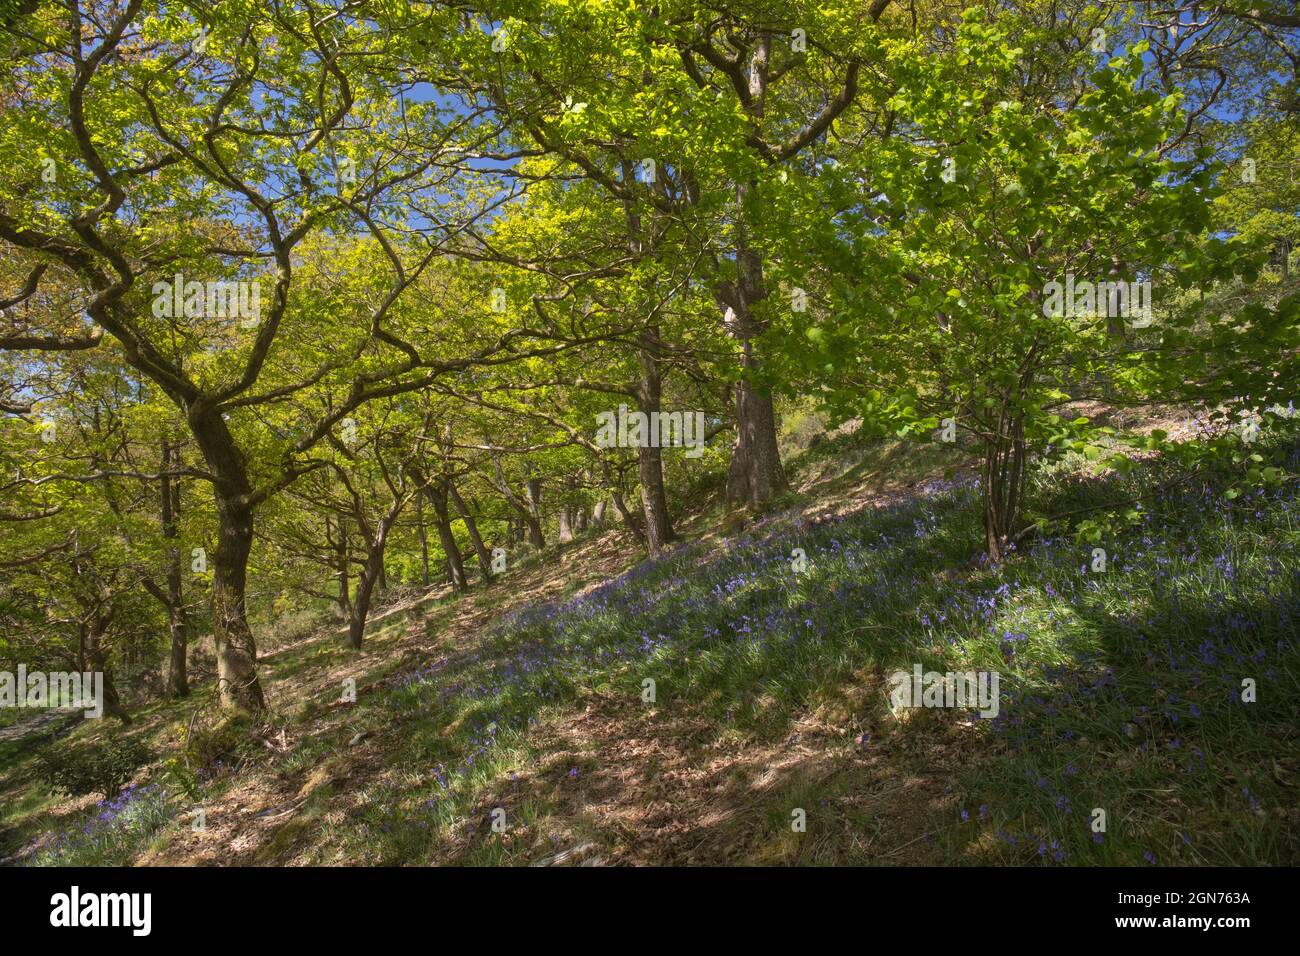 Bluebells (Hyacinthoides non scripta) fioritura in un bosco di querce. Powys, Galles. Maggio. Foto Stock